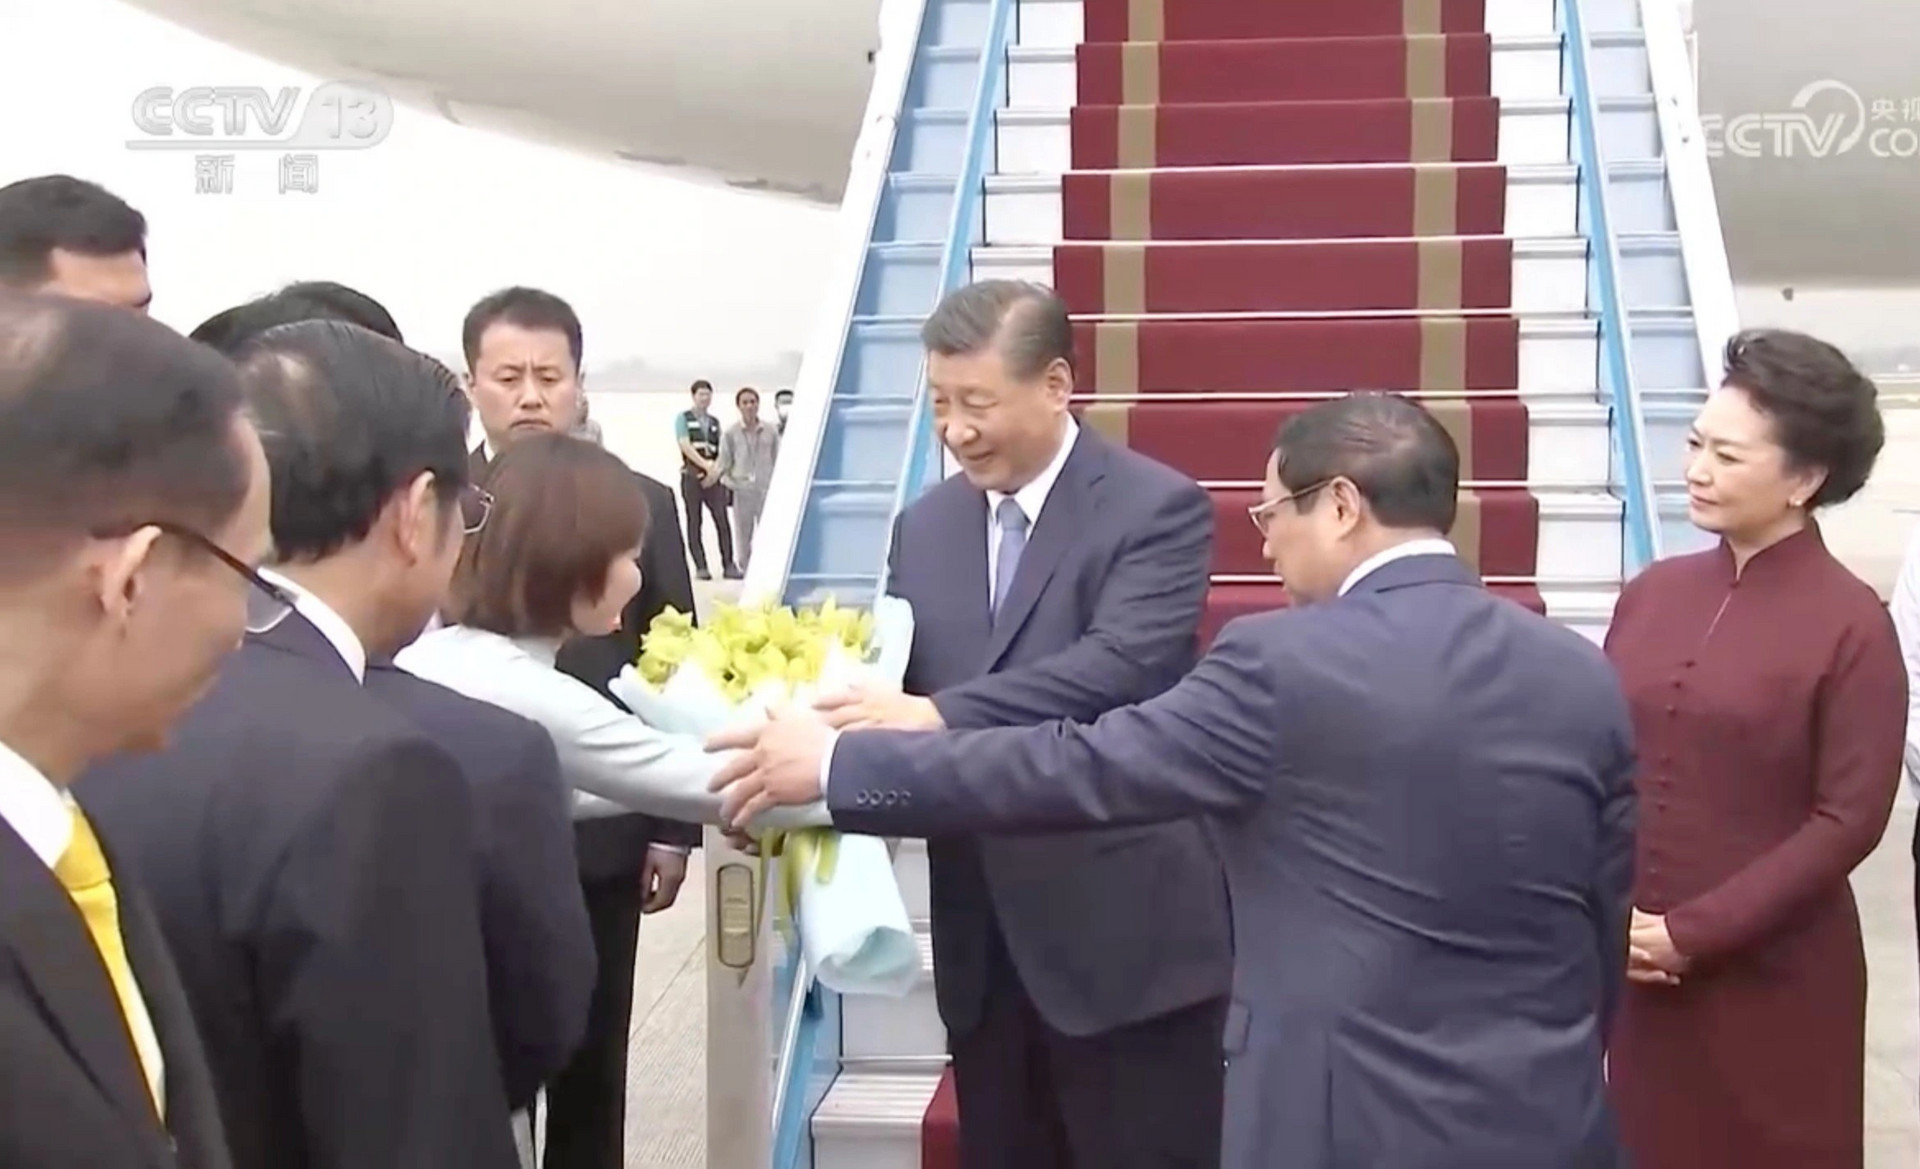 Hai nữ sinh tặng hoa Chủ tịch Trung Quốc Tập Cận Bình là ai? - 1